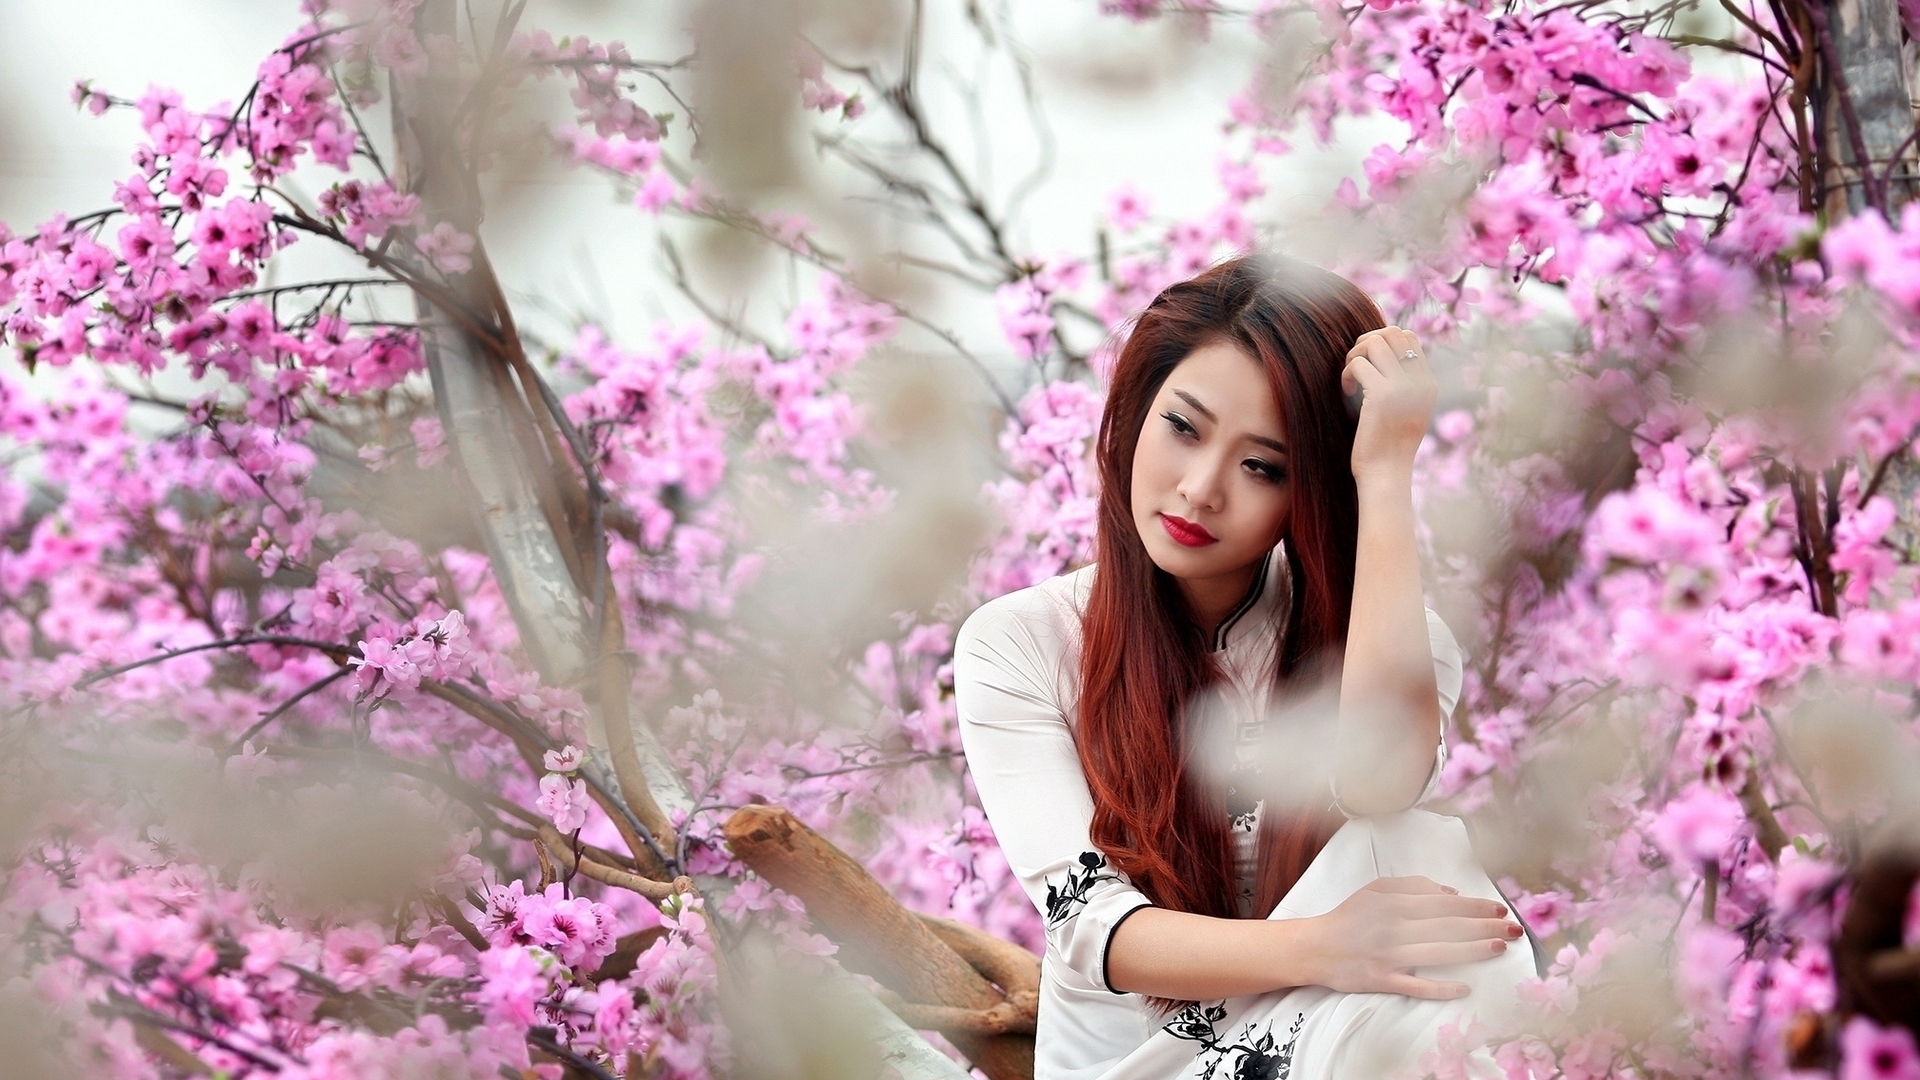 Wallpaper / sakura, model, spring, woman, blossom, girl, flower, asian, white free download